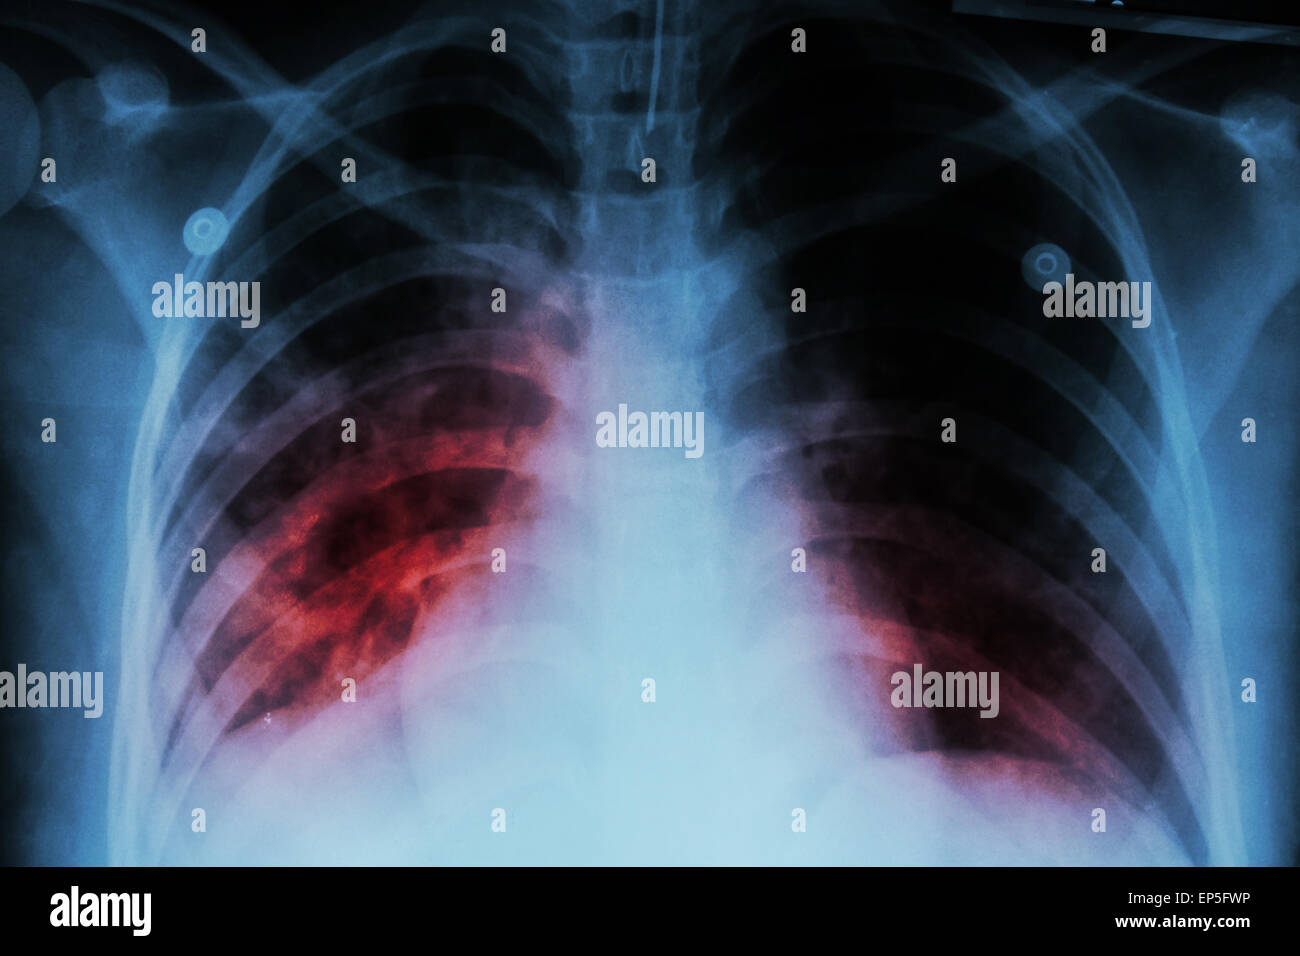 La tuberculose pulmonaire ( to ) : Radiographie de montrer l'infiltration alvéolaire pulmonaire à la fois due à mycobacterium tuberculosis infectio Banque D'Images